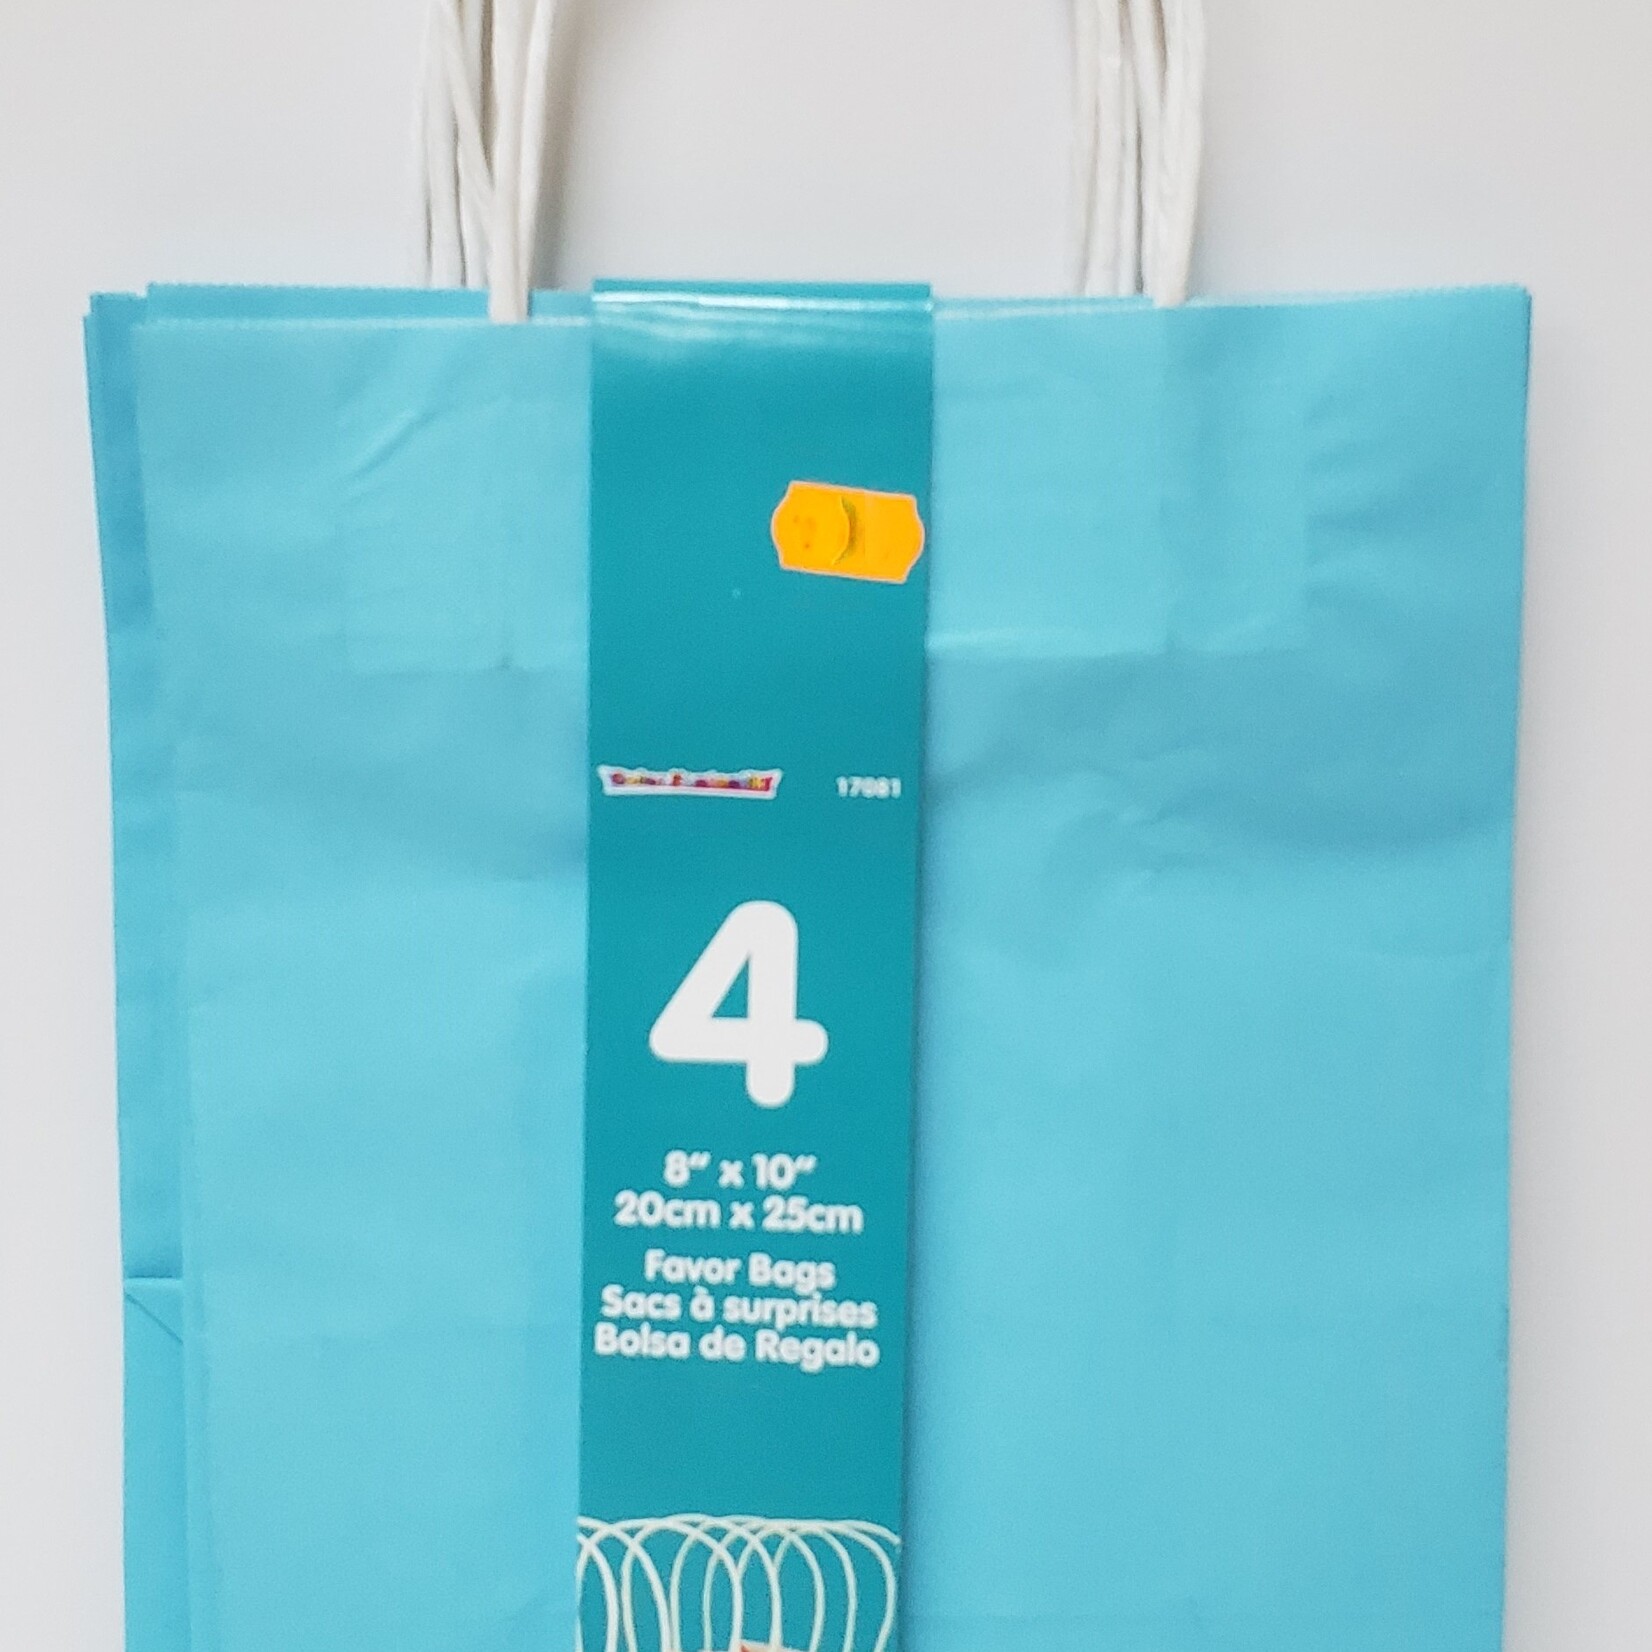 Kraft Favor Bags  4CT (8"x10")